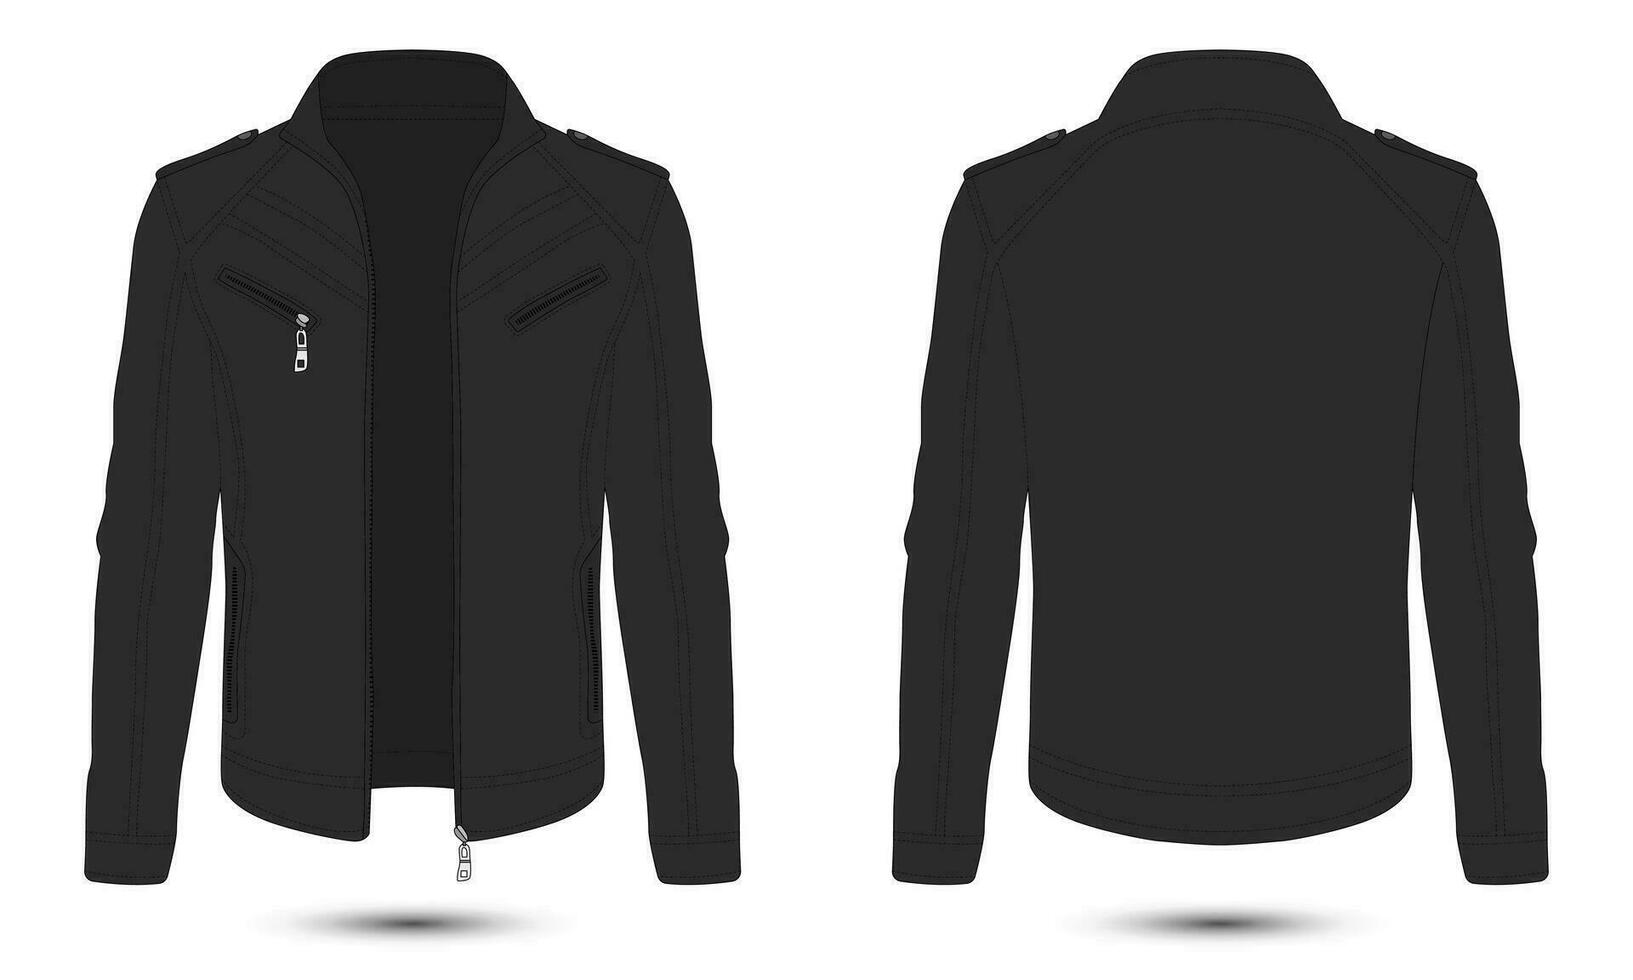 schwarz Leder Jacke Attrappe, Lehrmodell, Simulation Vorderseite und zurück Aussicht vektor